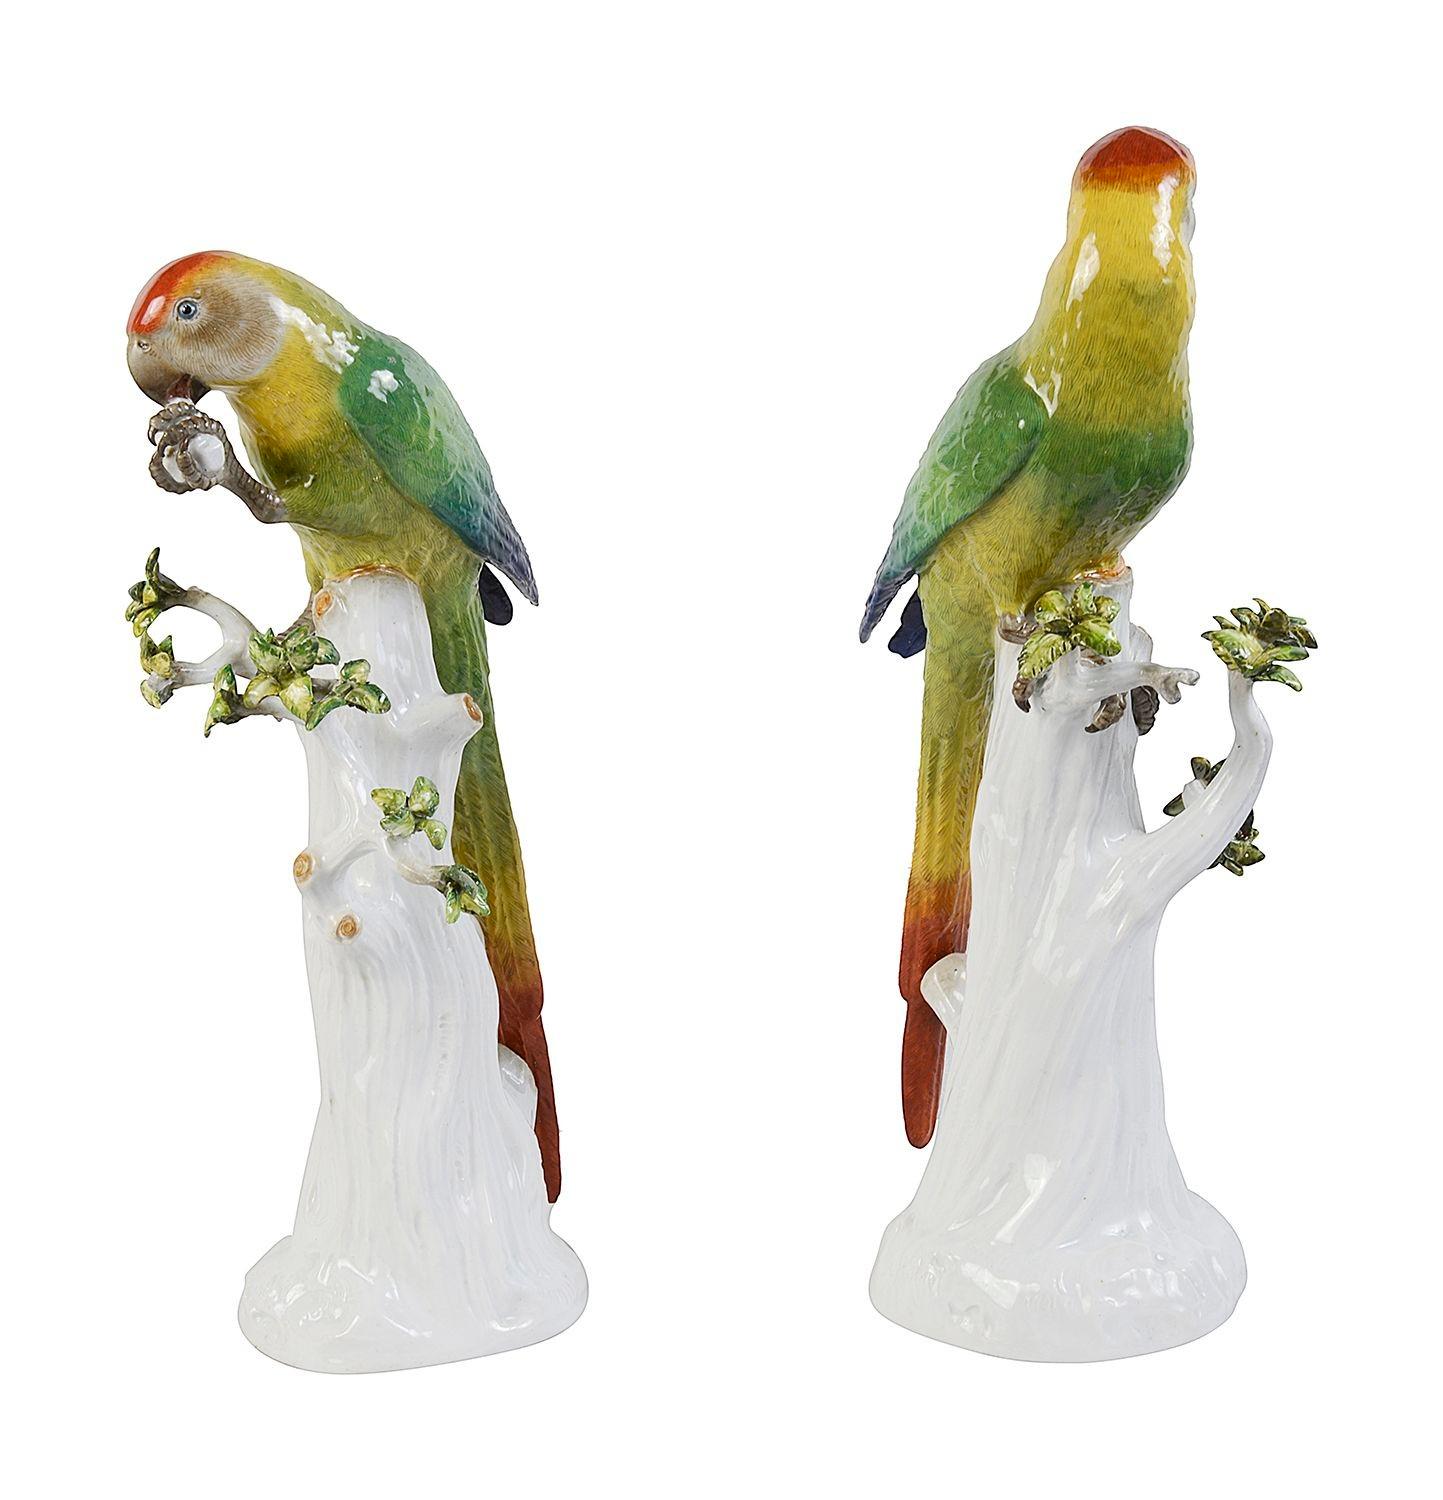 Ein auffälliges, qualitativ hochwertiges Paar Meissener Porzellan-Papageien aus dem späten 19. Jahrhundert, die auf Baumstämmen sitzen und jeweils wunderbare, kräftige Farben und Details aufweisen.

Los 76 62436 DHKZ